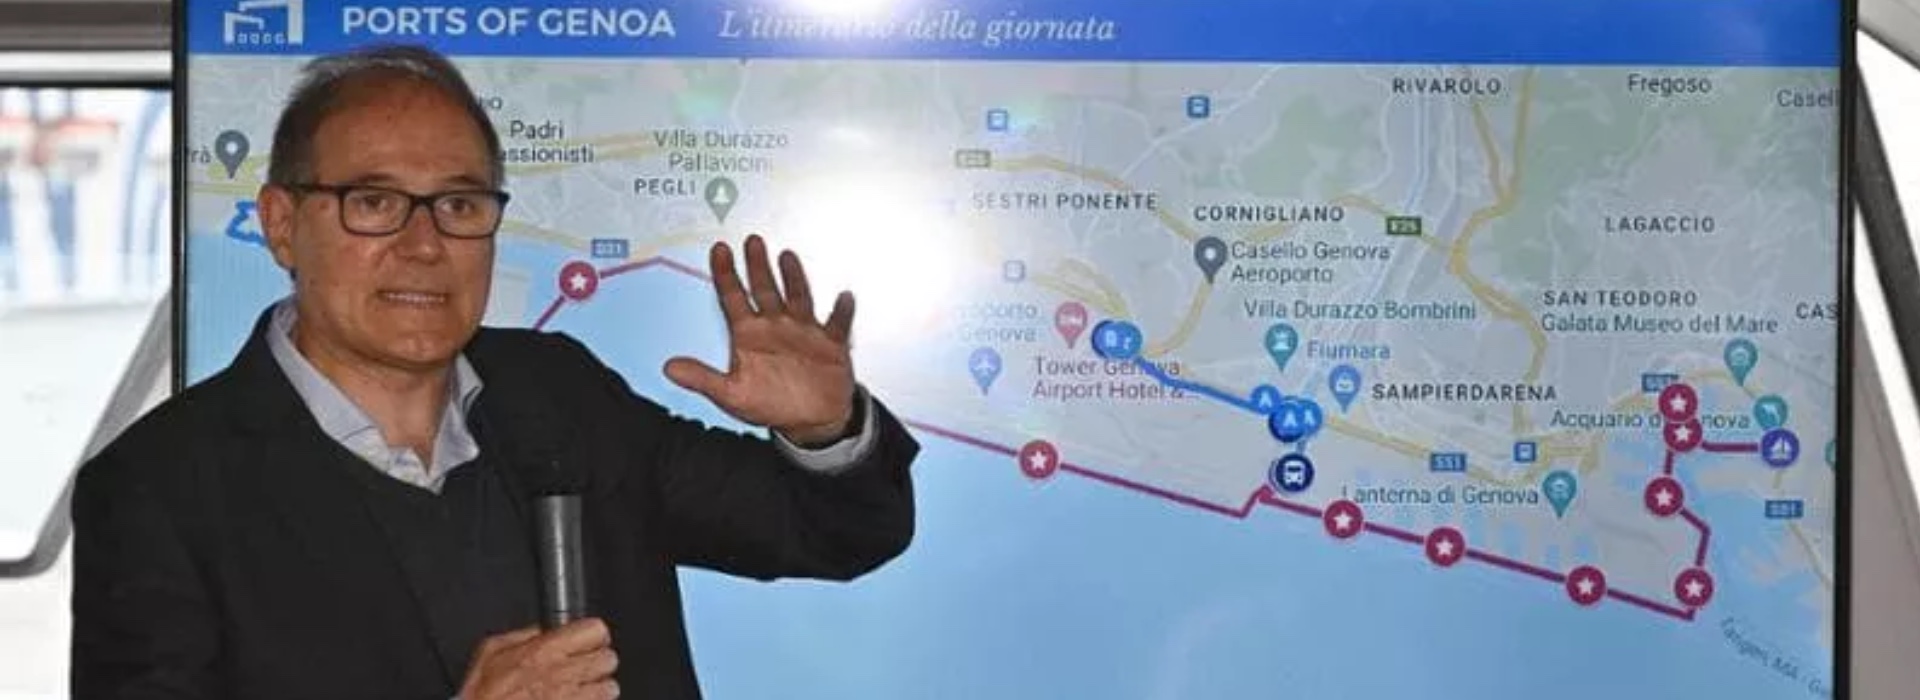 Maxi inchiesta sulla corruzione in Liguria: sequestrati oltre 200 mila euro a casa di Aldo Spinelli